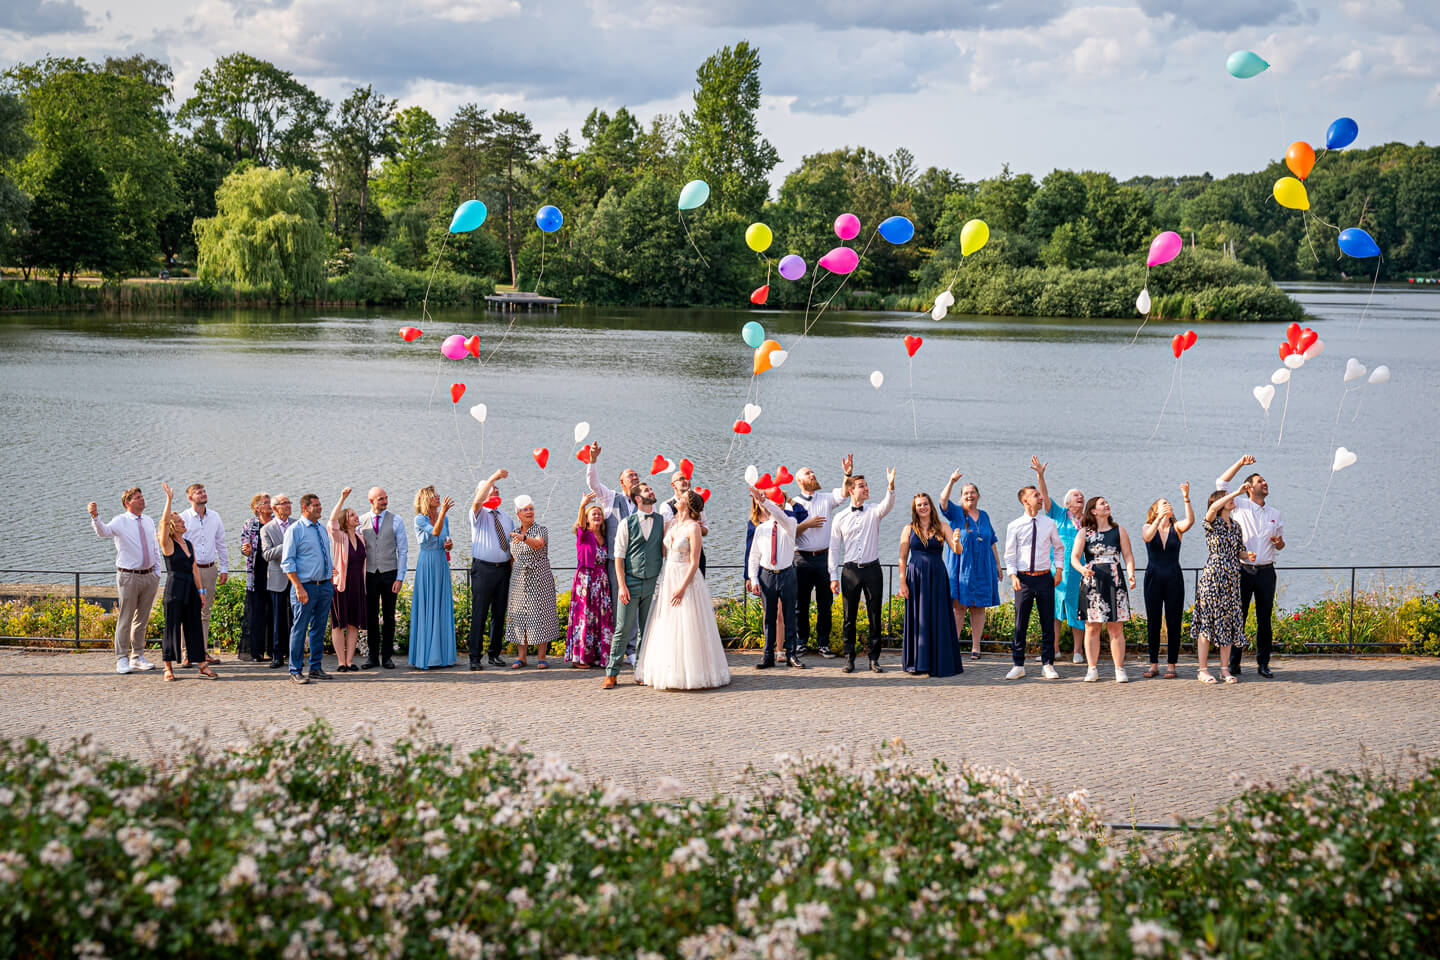 Hochzeitsgesellschaft mit bunten Ballons die in den Himmel steigen.